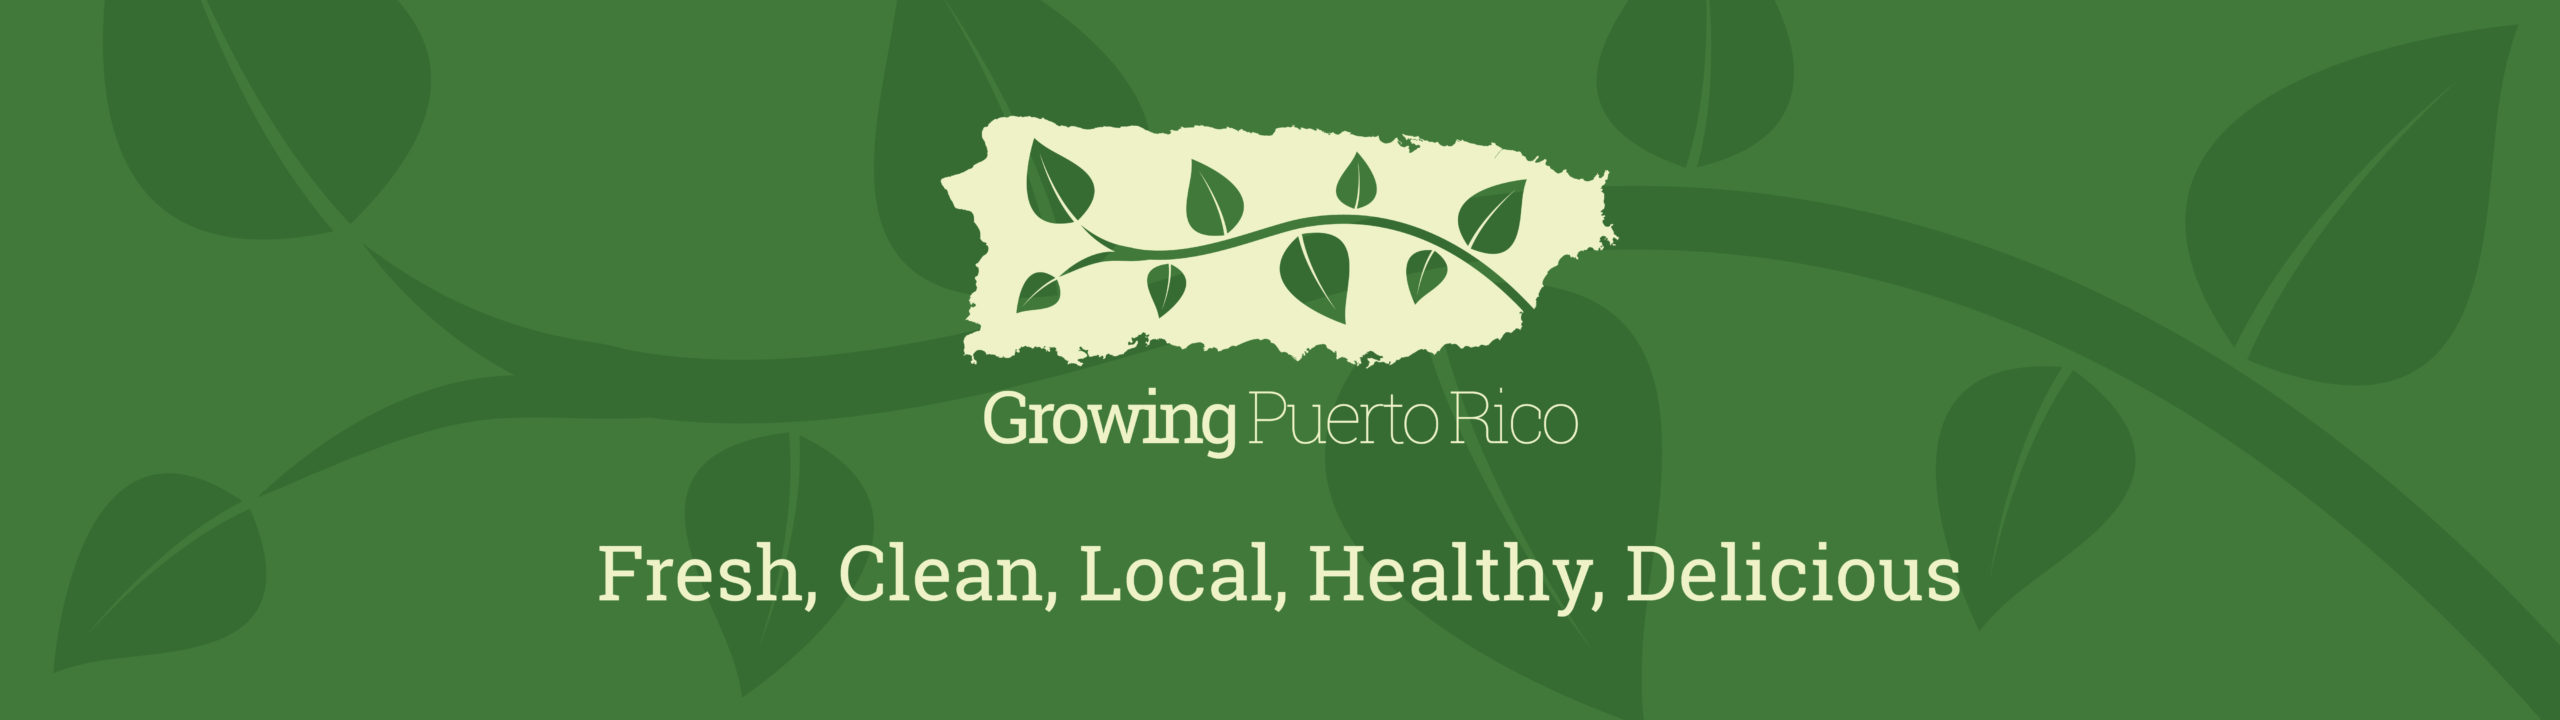 Growing Puerto Rico Homepage header